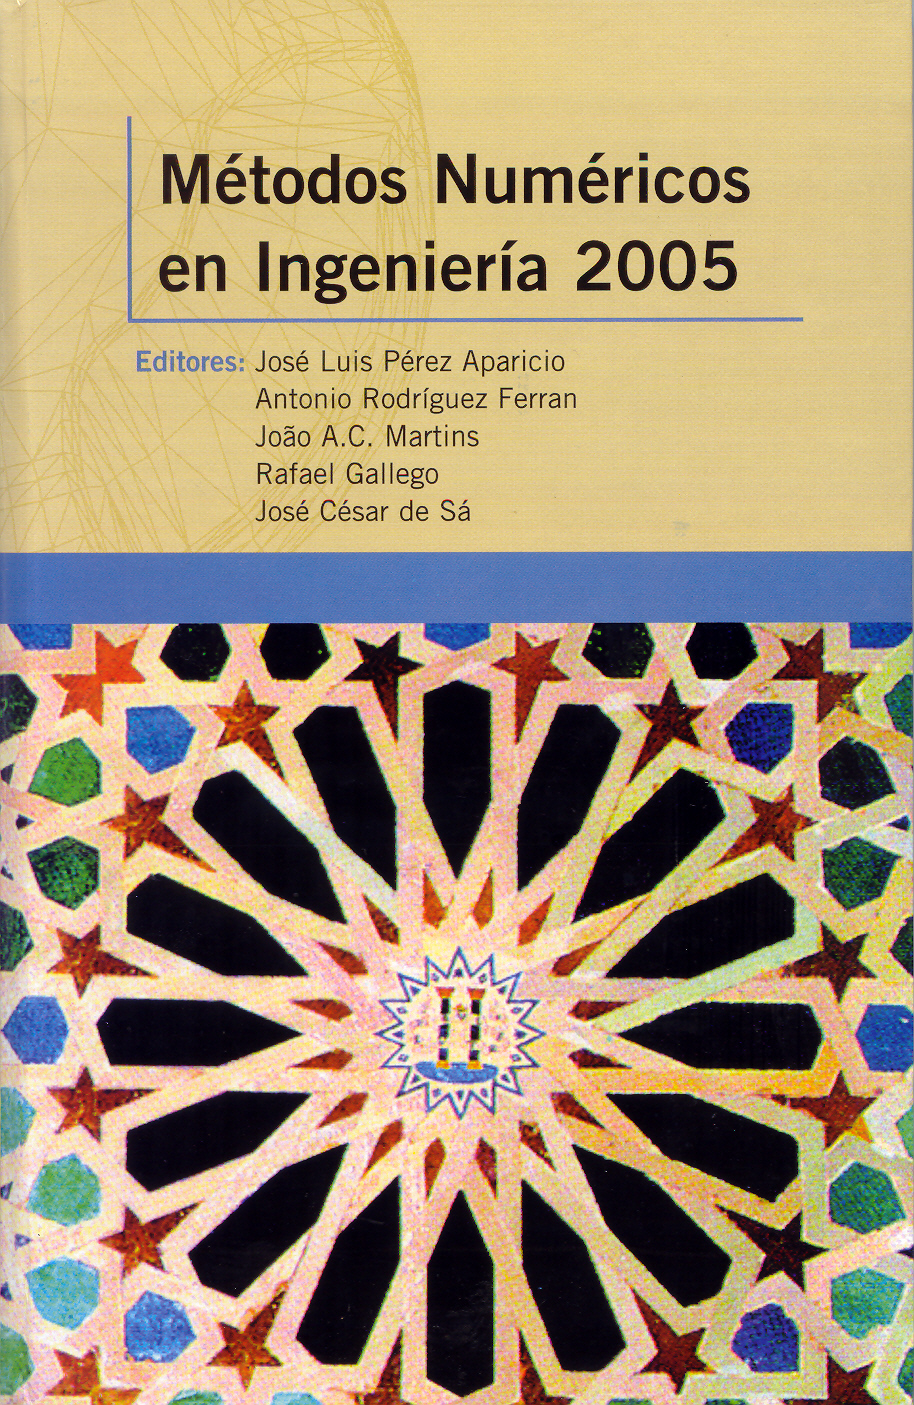 Imagen de portada del libro Métodos numéricos en ingeniería, 2005